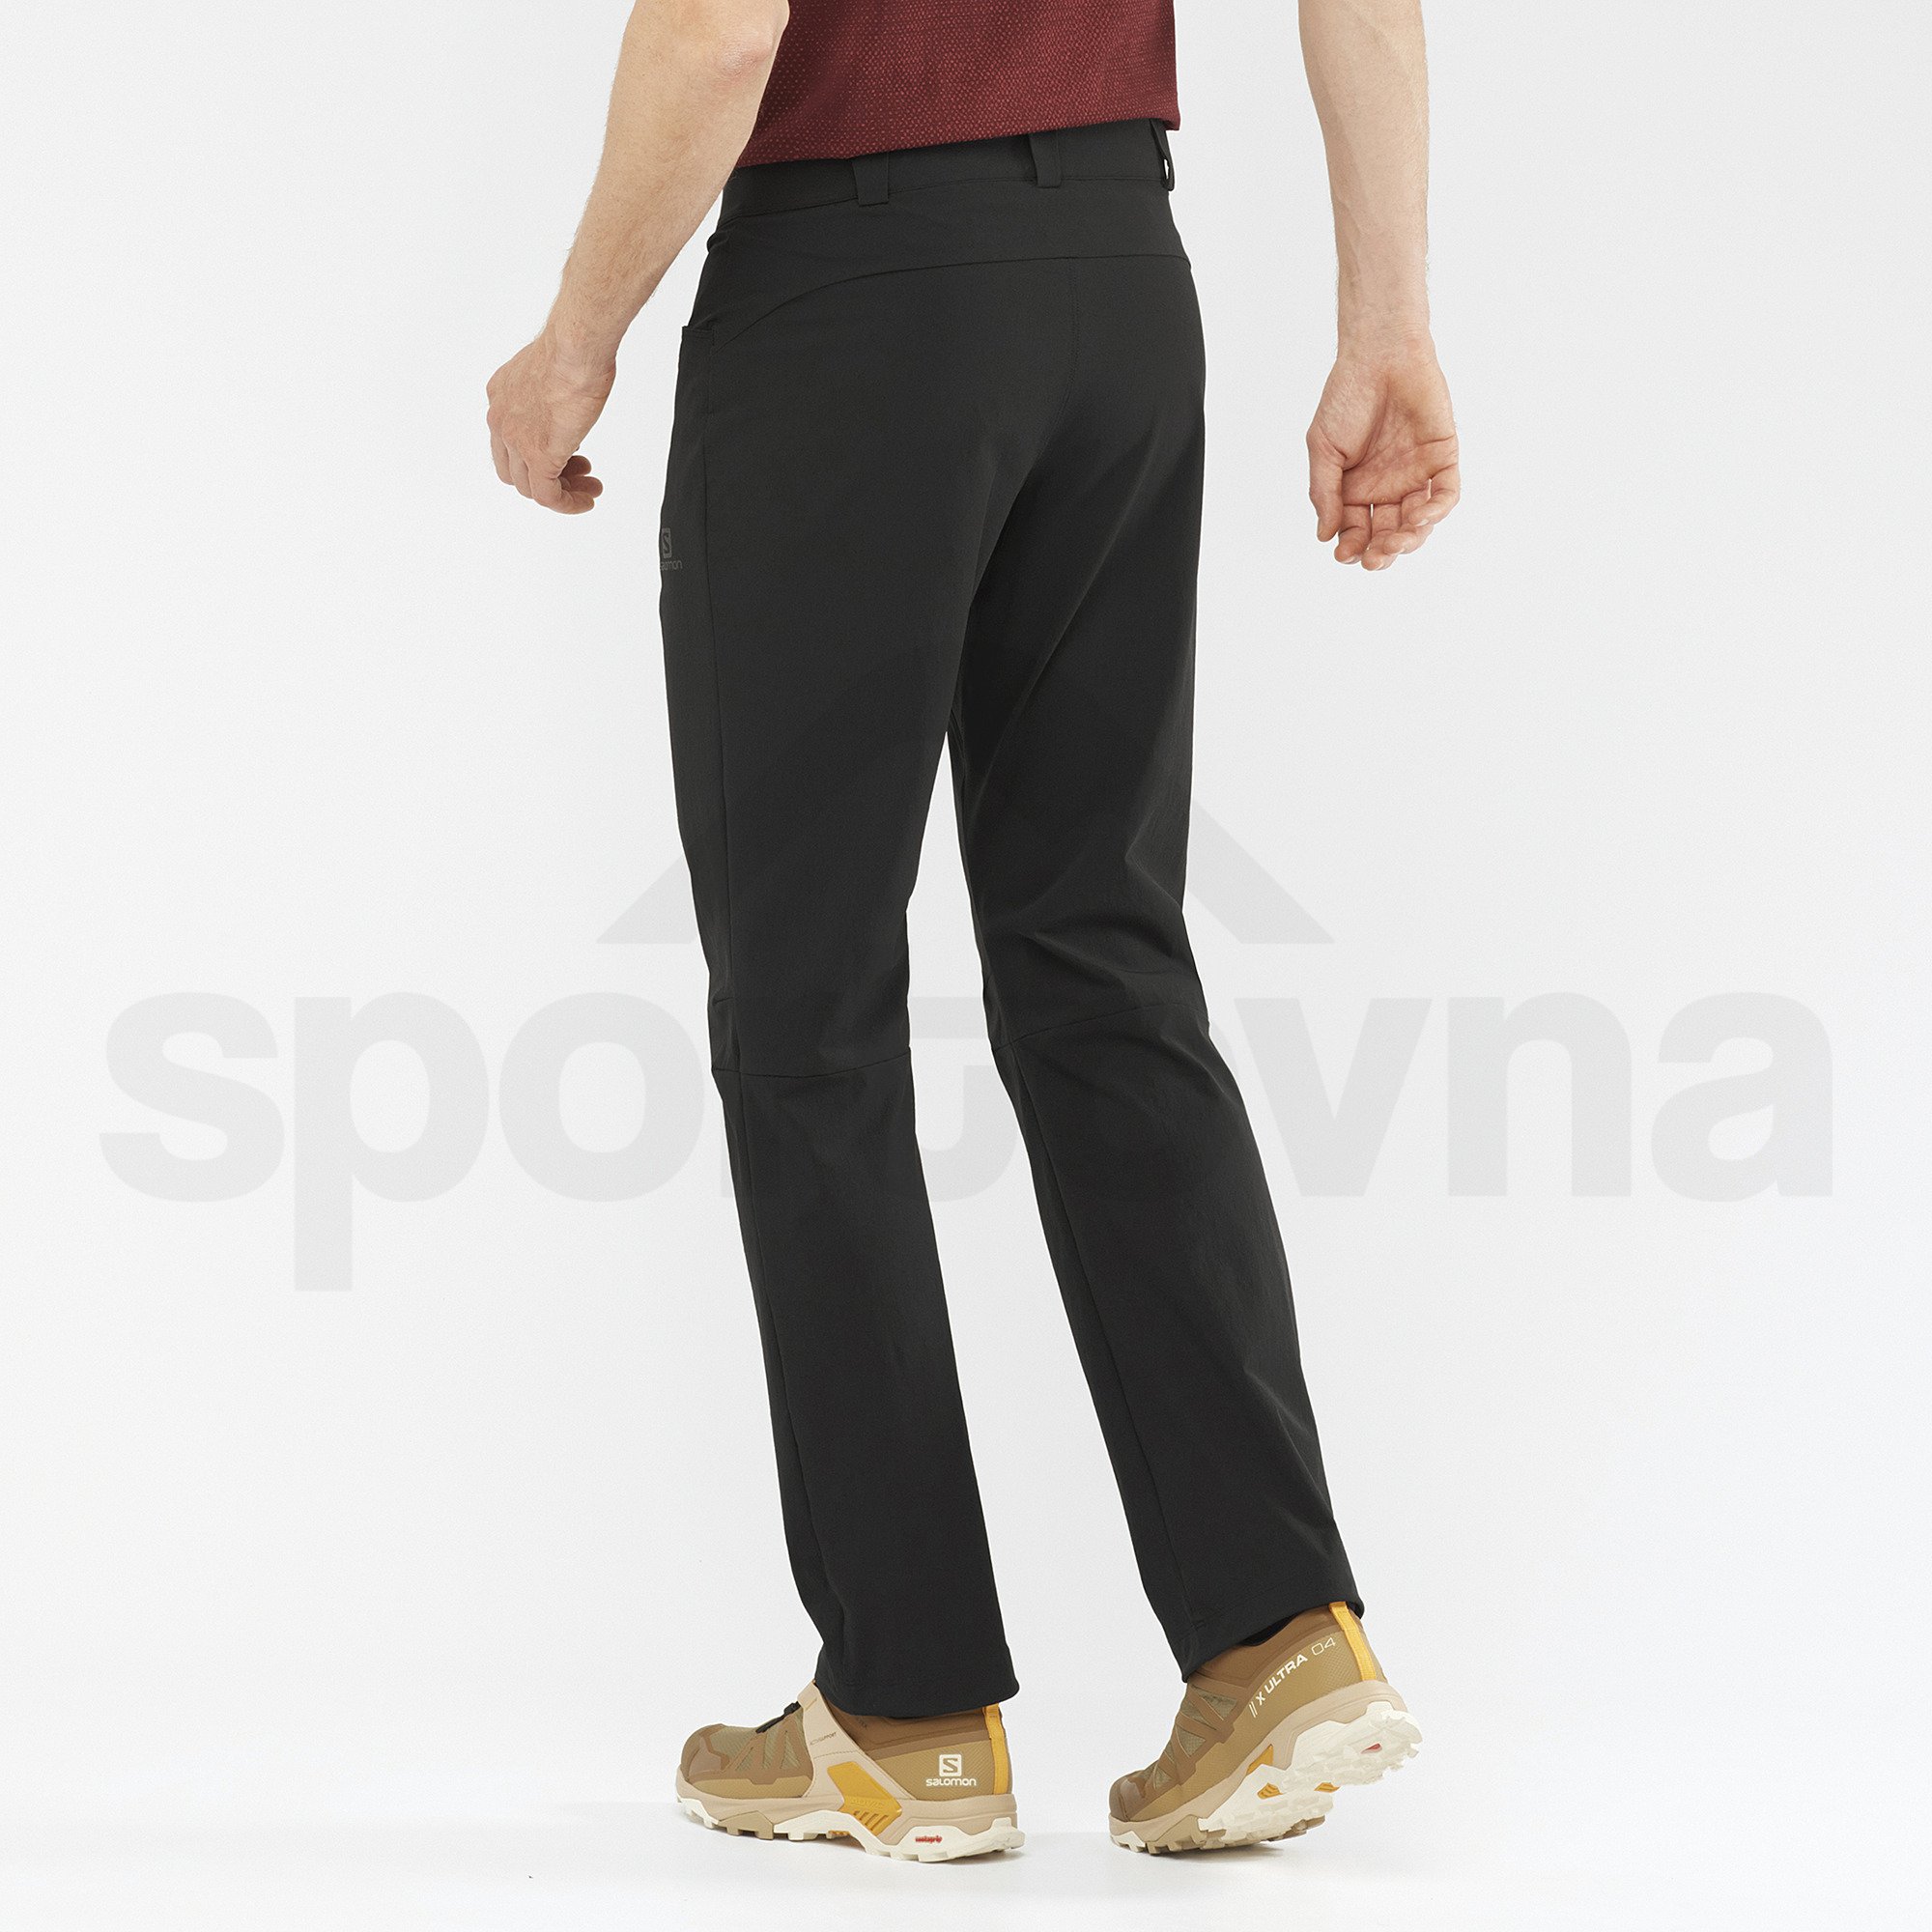 Kalhoty Salomon Wayfarer Pants M - černá (prodloužená délka)